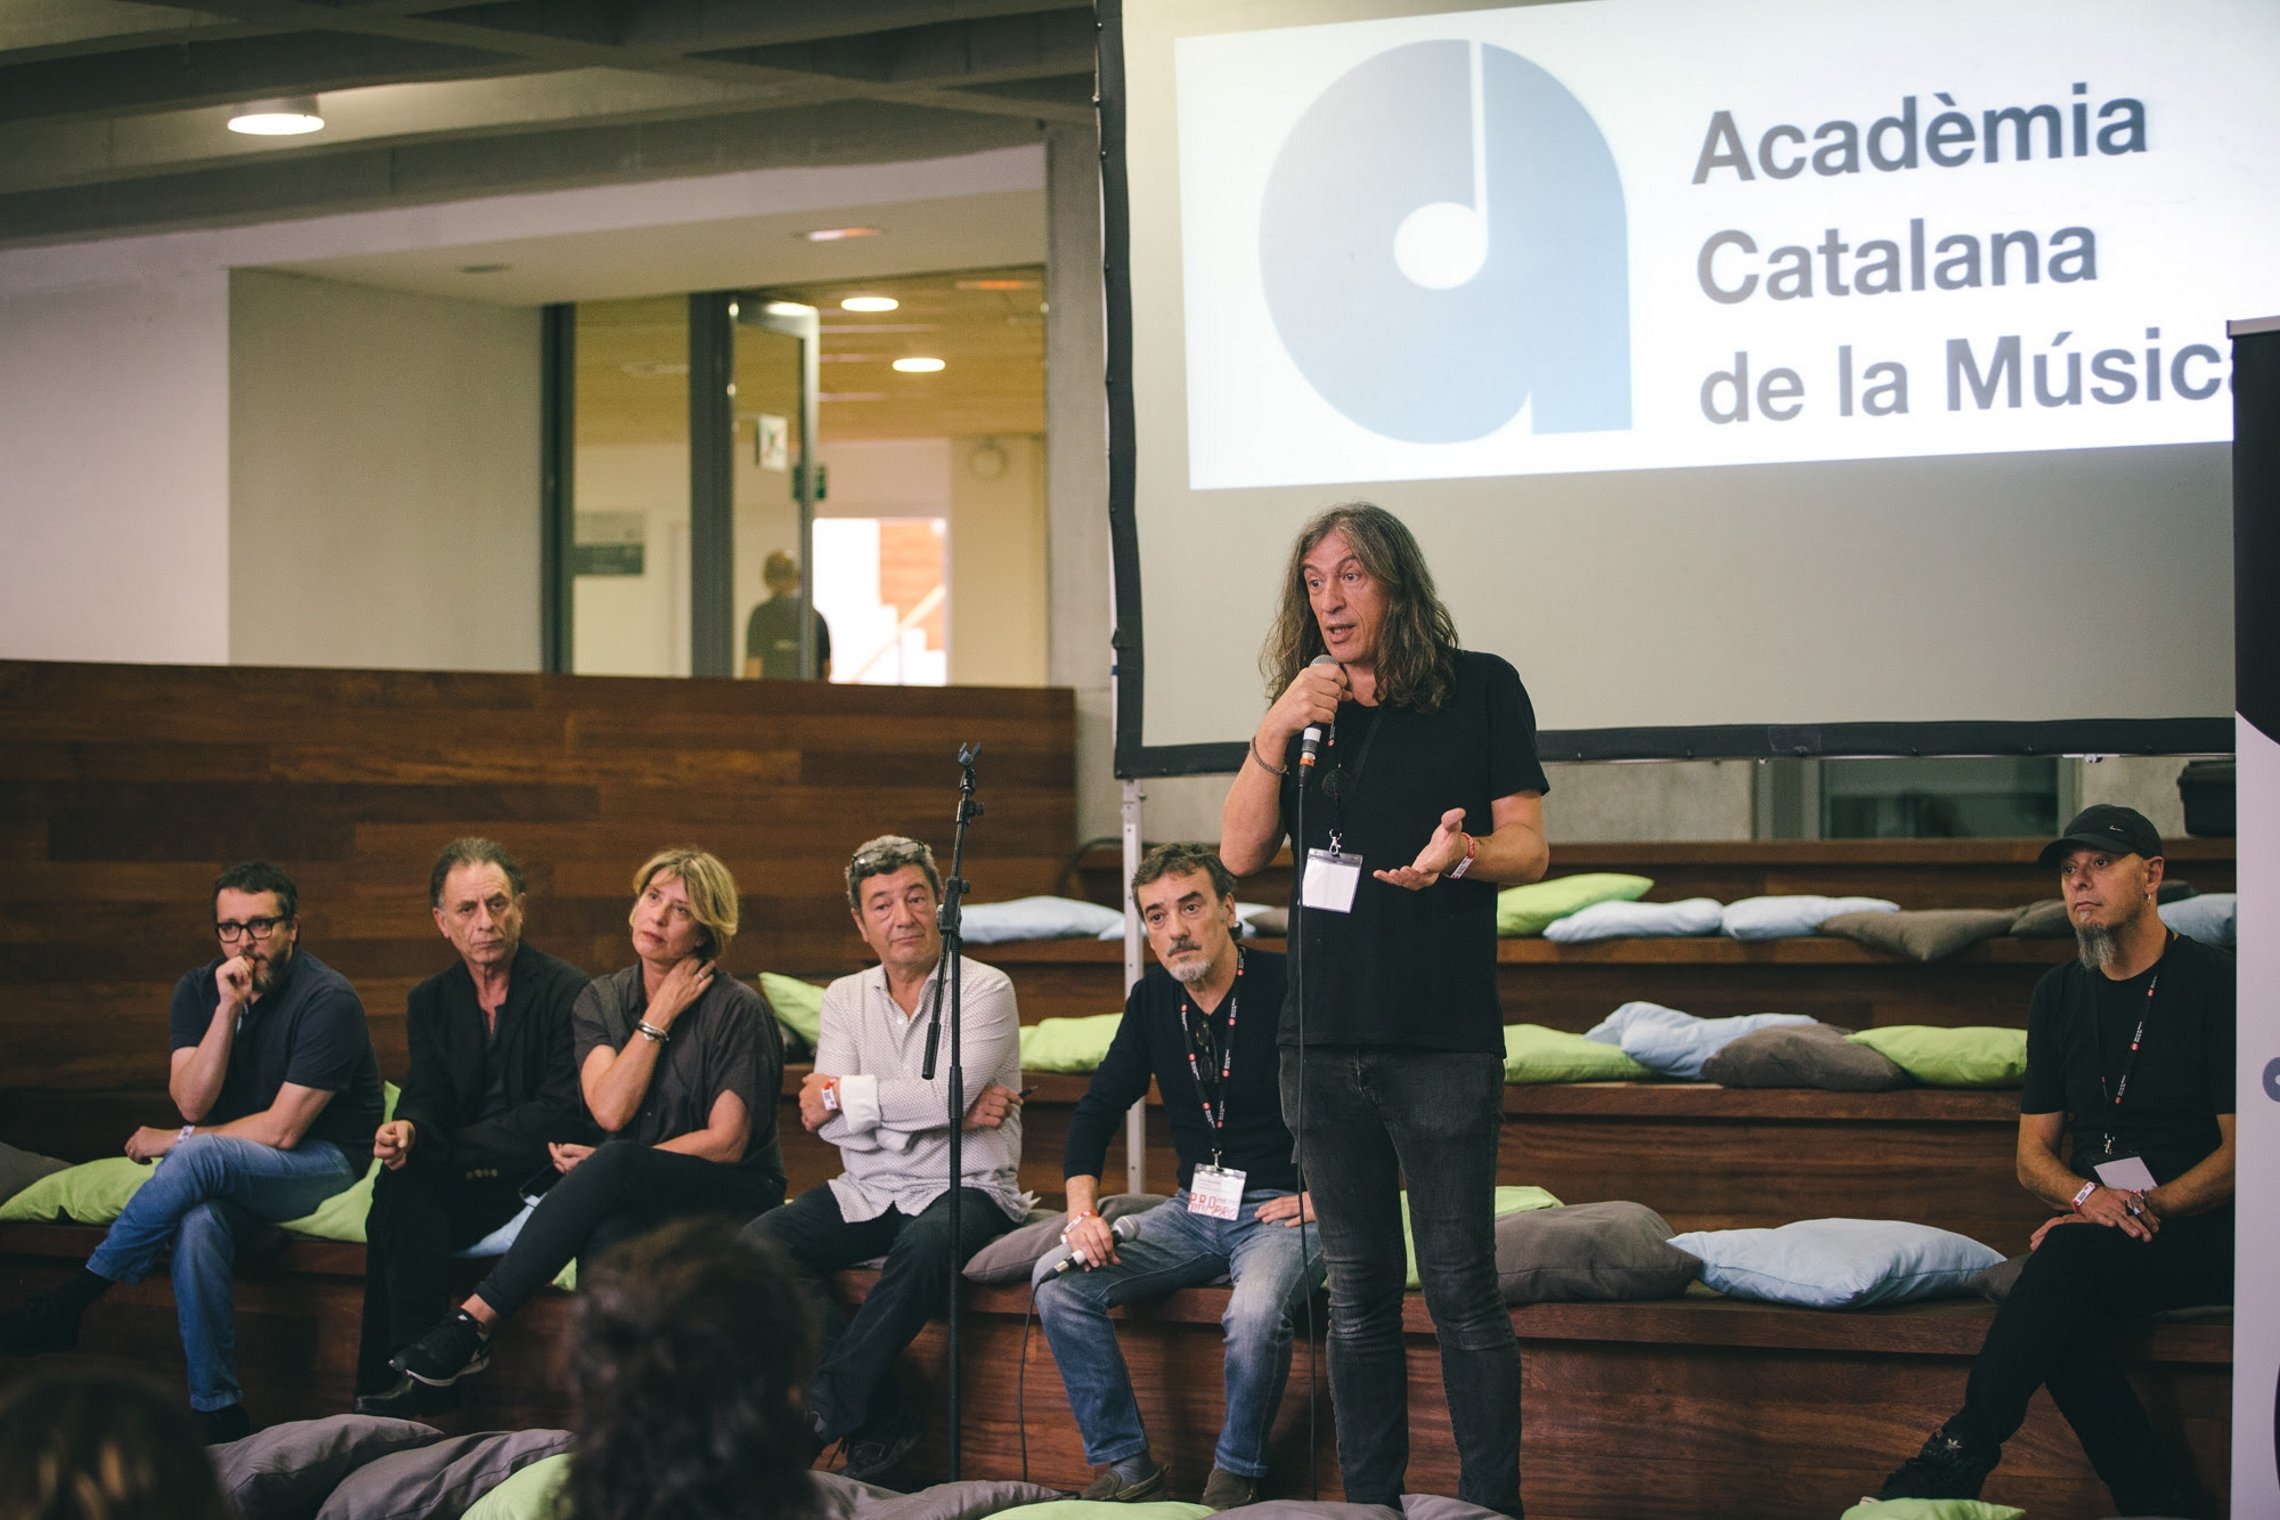 L'Acadèmia Catalana de la Música organitza un fòrum al novembre